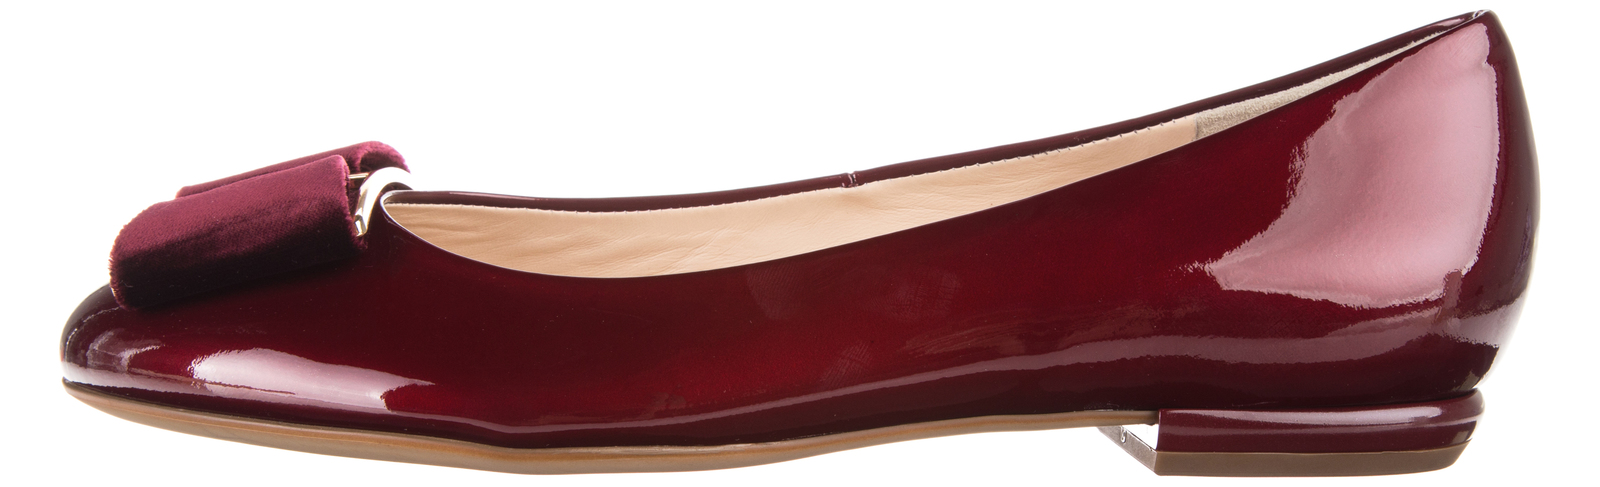 Högl Balerina cipő 37, Piros fotója